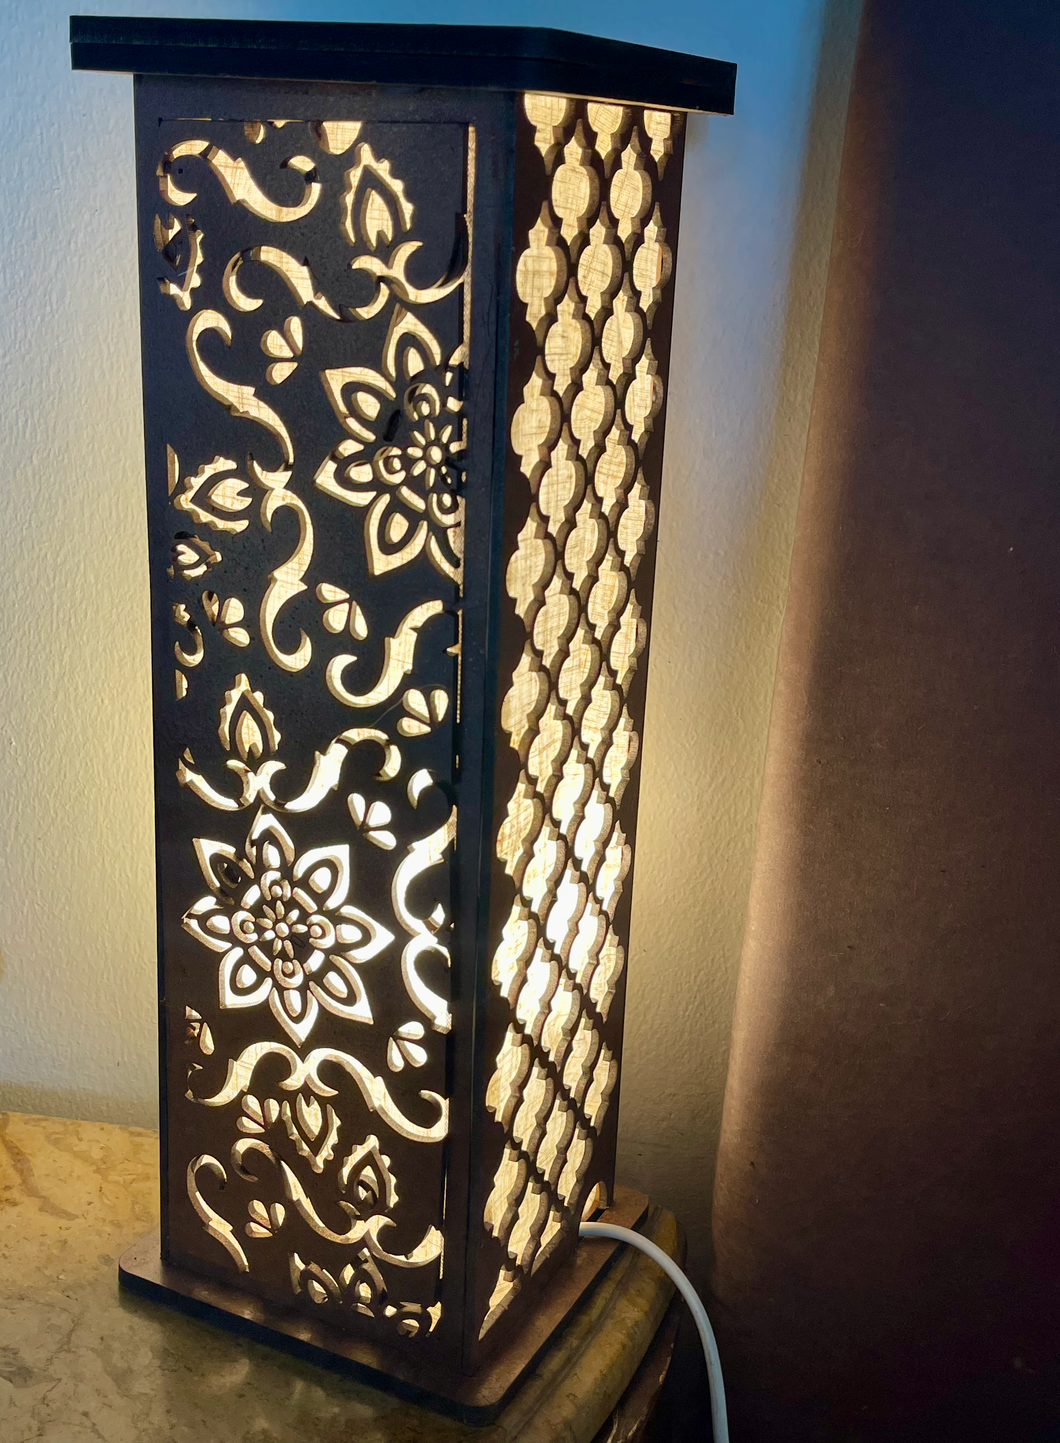 Beautiful Lamp with Mandala pattern